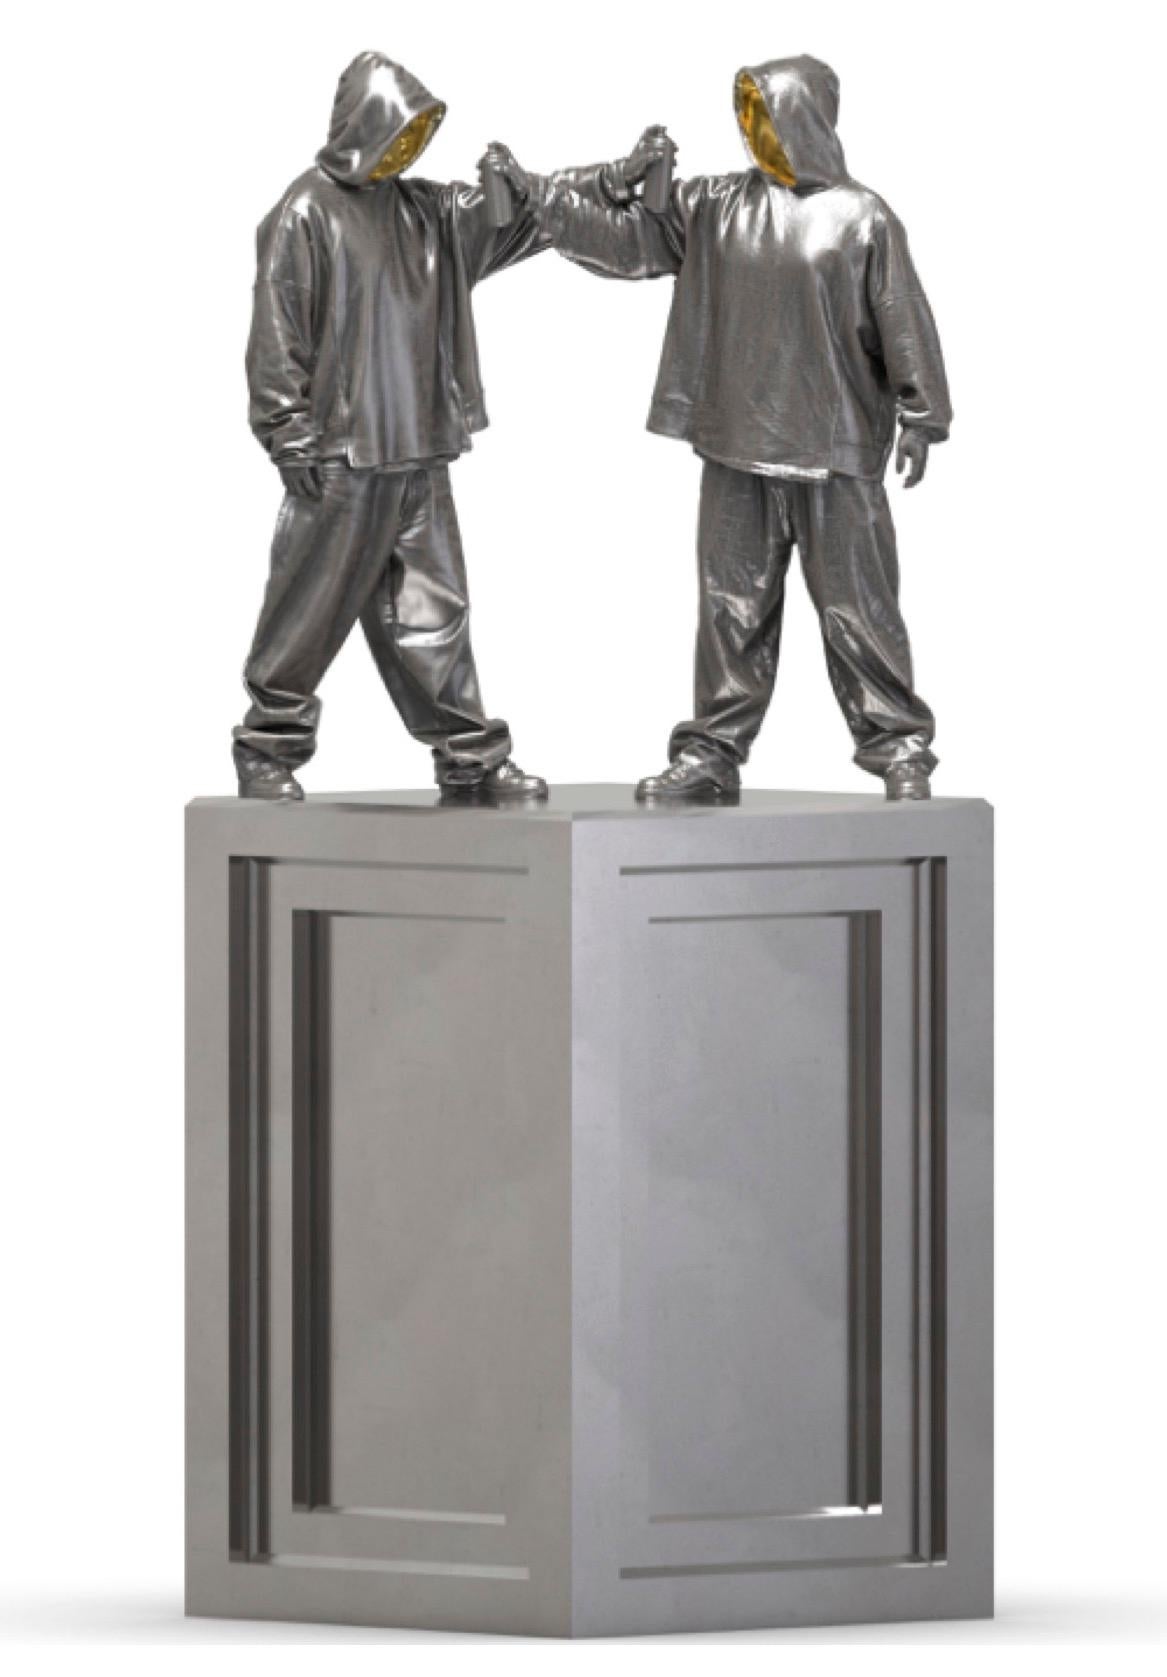 Bronzeskulptur „Fisch“ von Huang Yulong, Auflage 1/8

Größe der Figur: 32" x 25" x 24" Zoll
Standgröße:  39" x 25" x 24,5" Zoll

ÜBER DEN KÜNSTLER
Huang Yulong wurde 1983 in der Provinz Anhui, China, geboren. Im Jahr 2007 schloss er sein Studium am